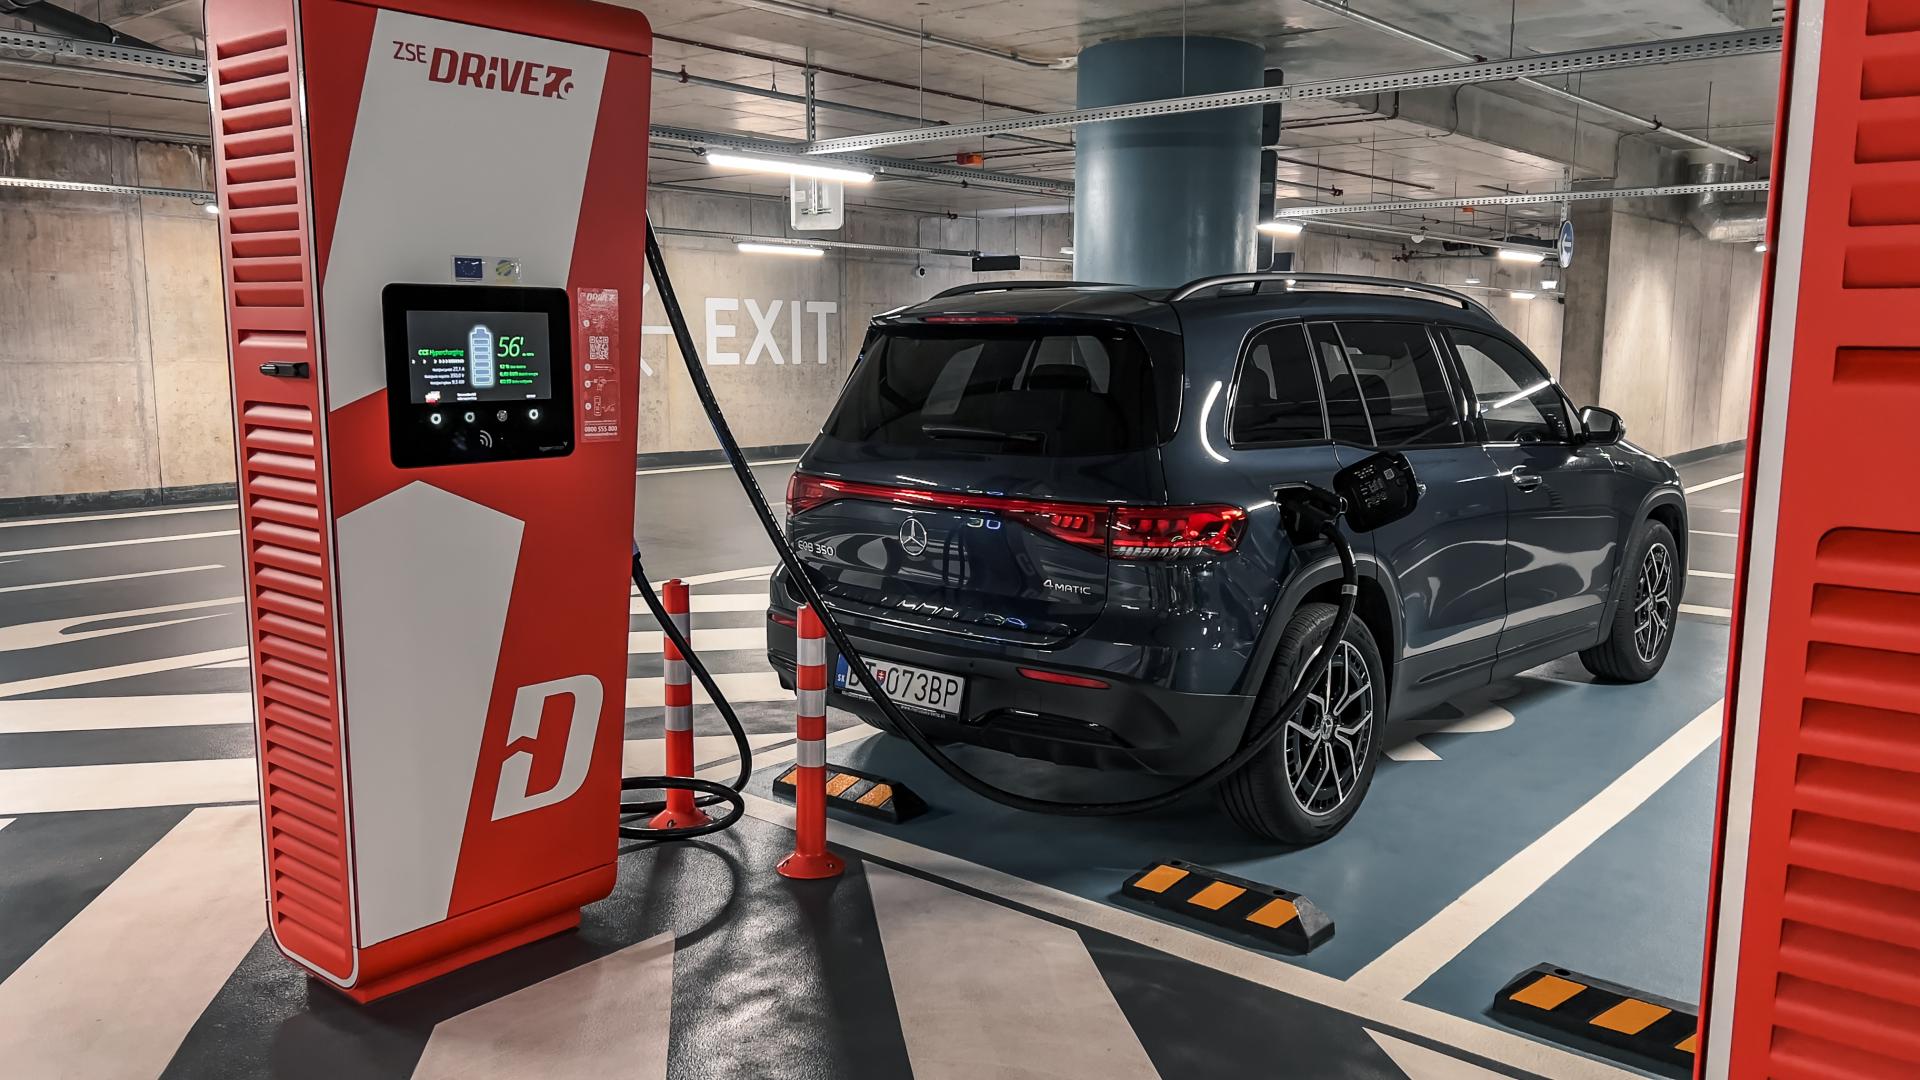 Elektromobily môžu predražiť parkovanie v garážach. Dôvodom je intenzita ich požiarov